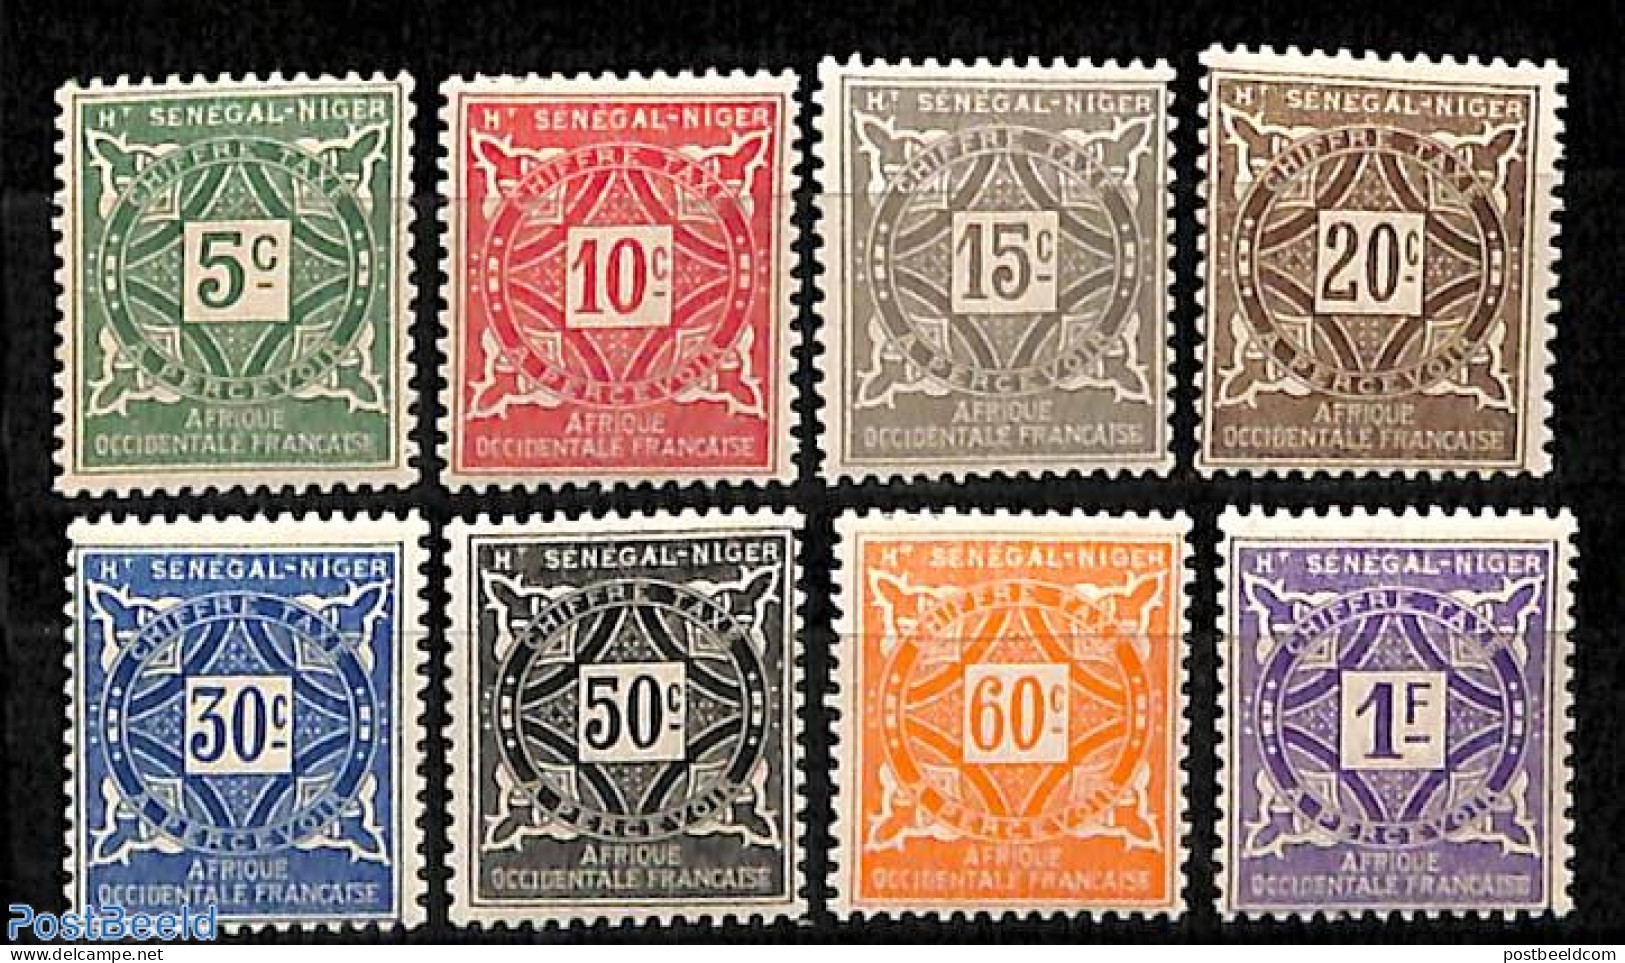 Mali 1915 Haute Senegal-Niger, Postage Due 8v, Unused (hinged) - Mali (1959-...)